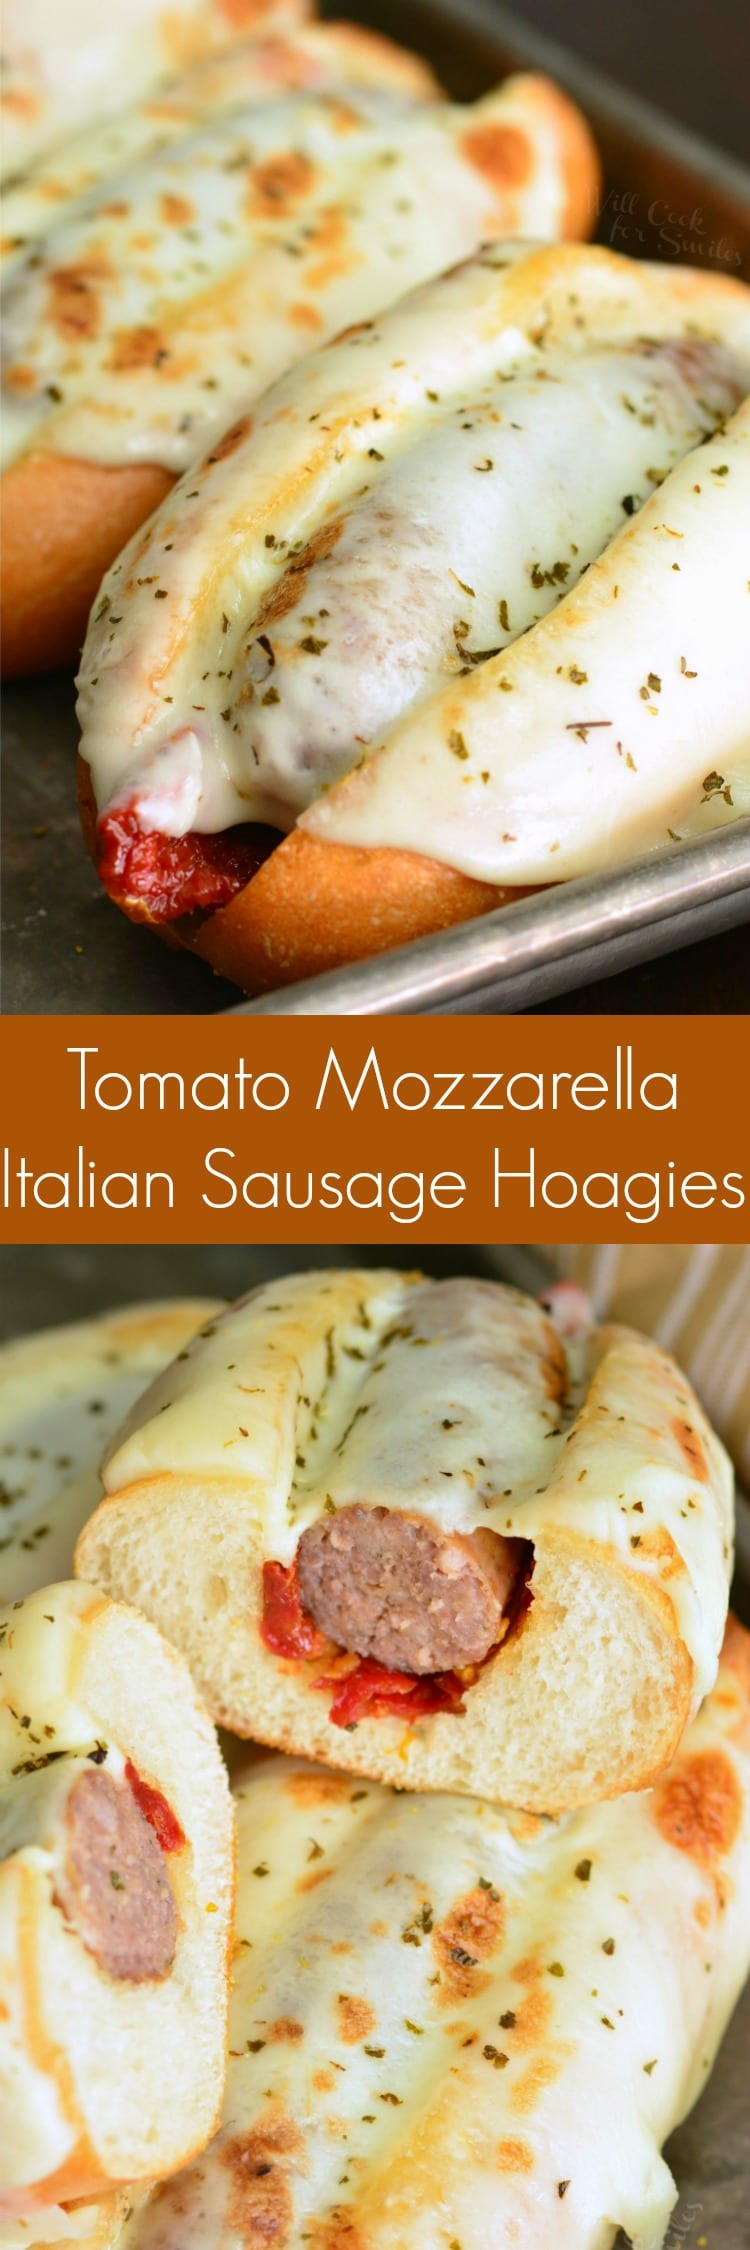 Tomato Mozzarella Italian Sausage Hoagies collage 